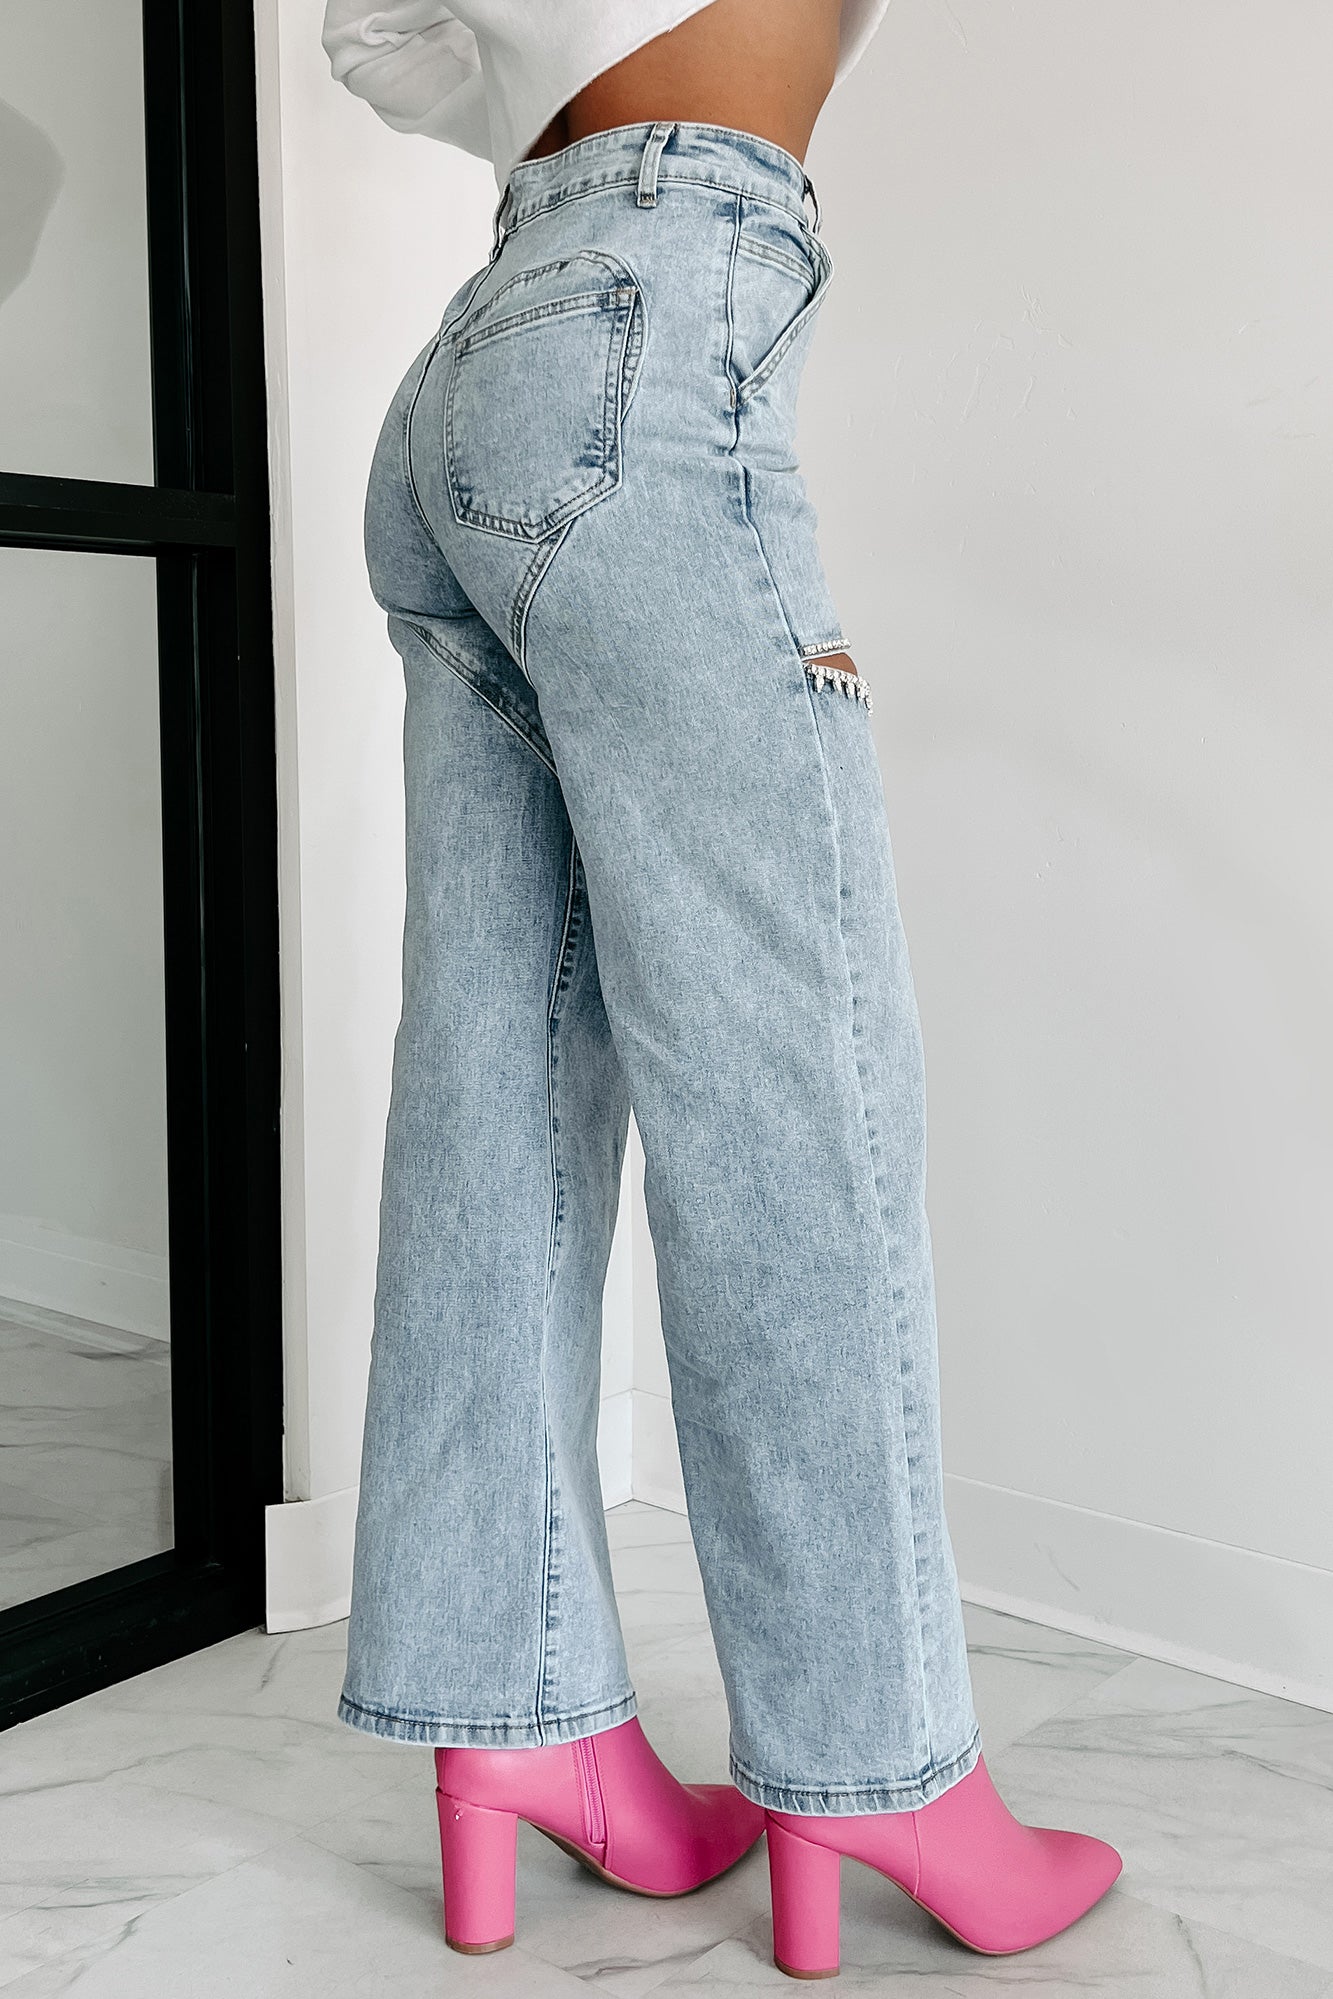 Pocket Front Wide Leg Jeans - Blush Boutique